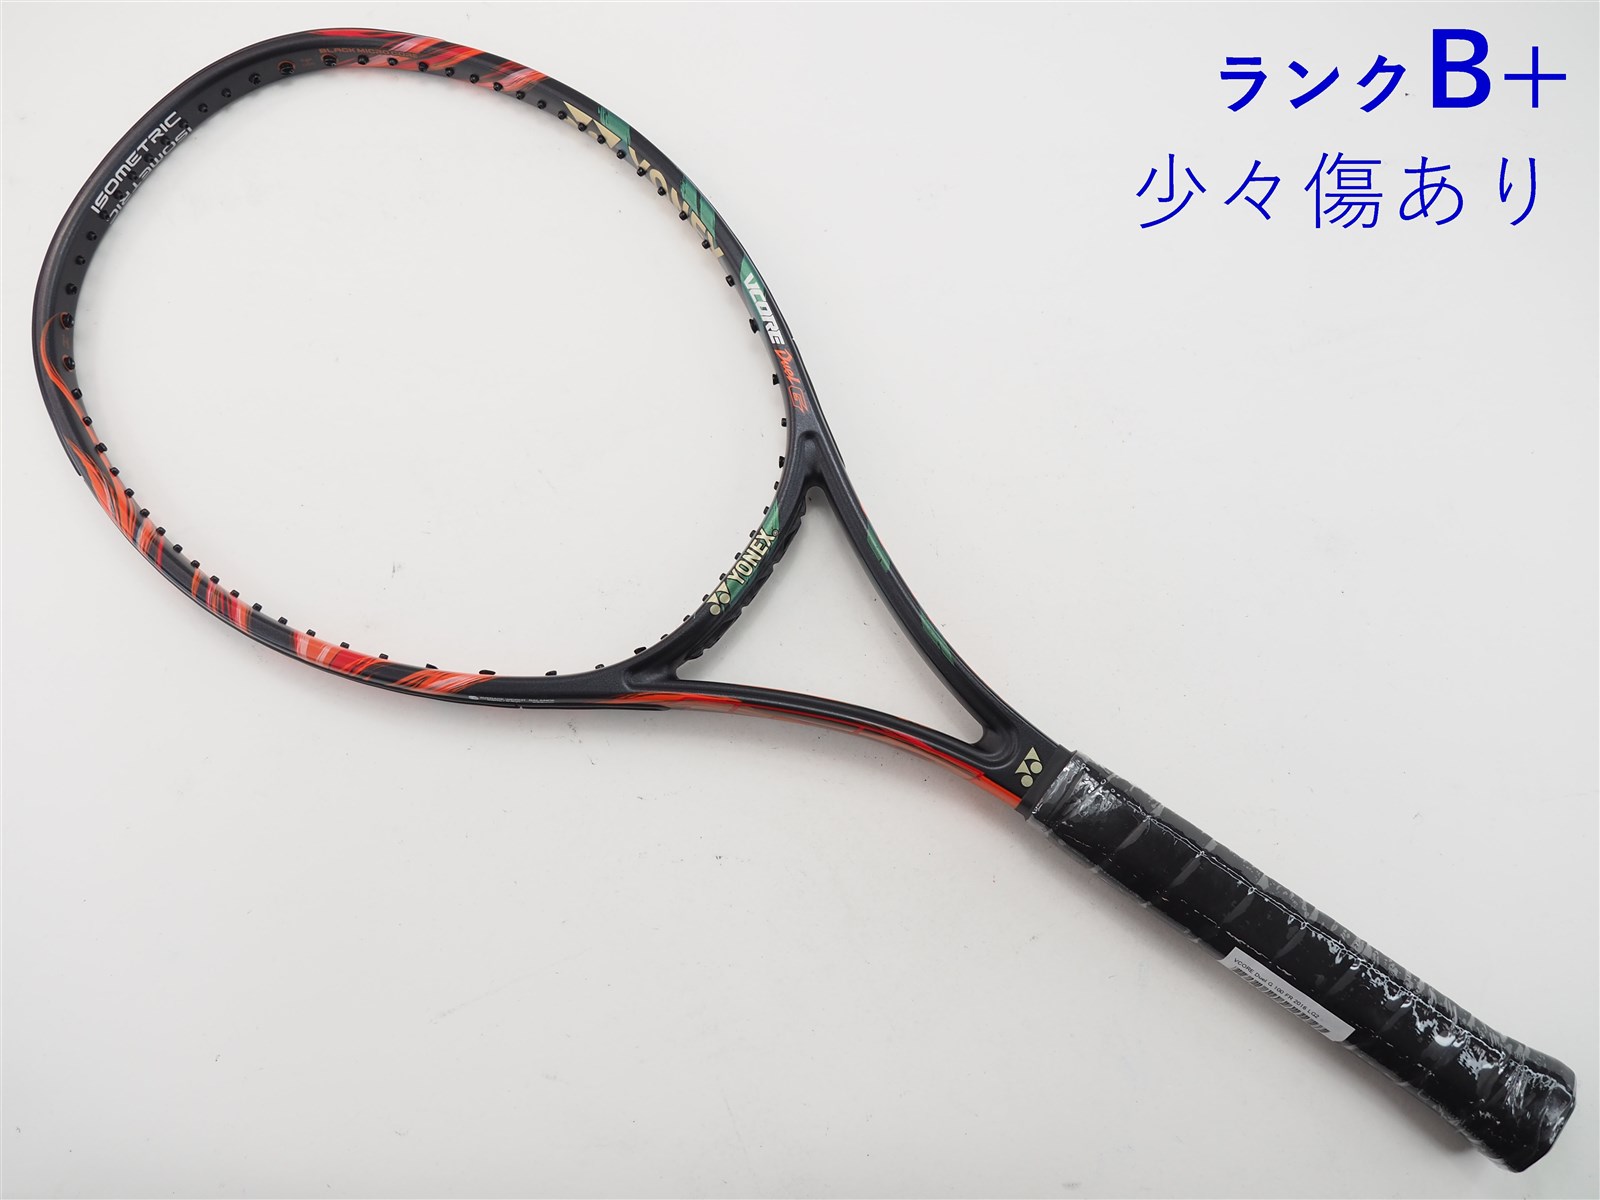 中古 テニスラケット ヨネックス ブイコア 98 2019年モデル (LG2)YONEX ...